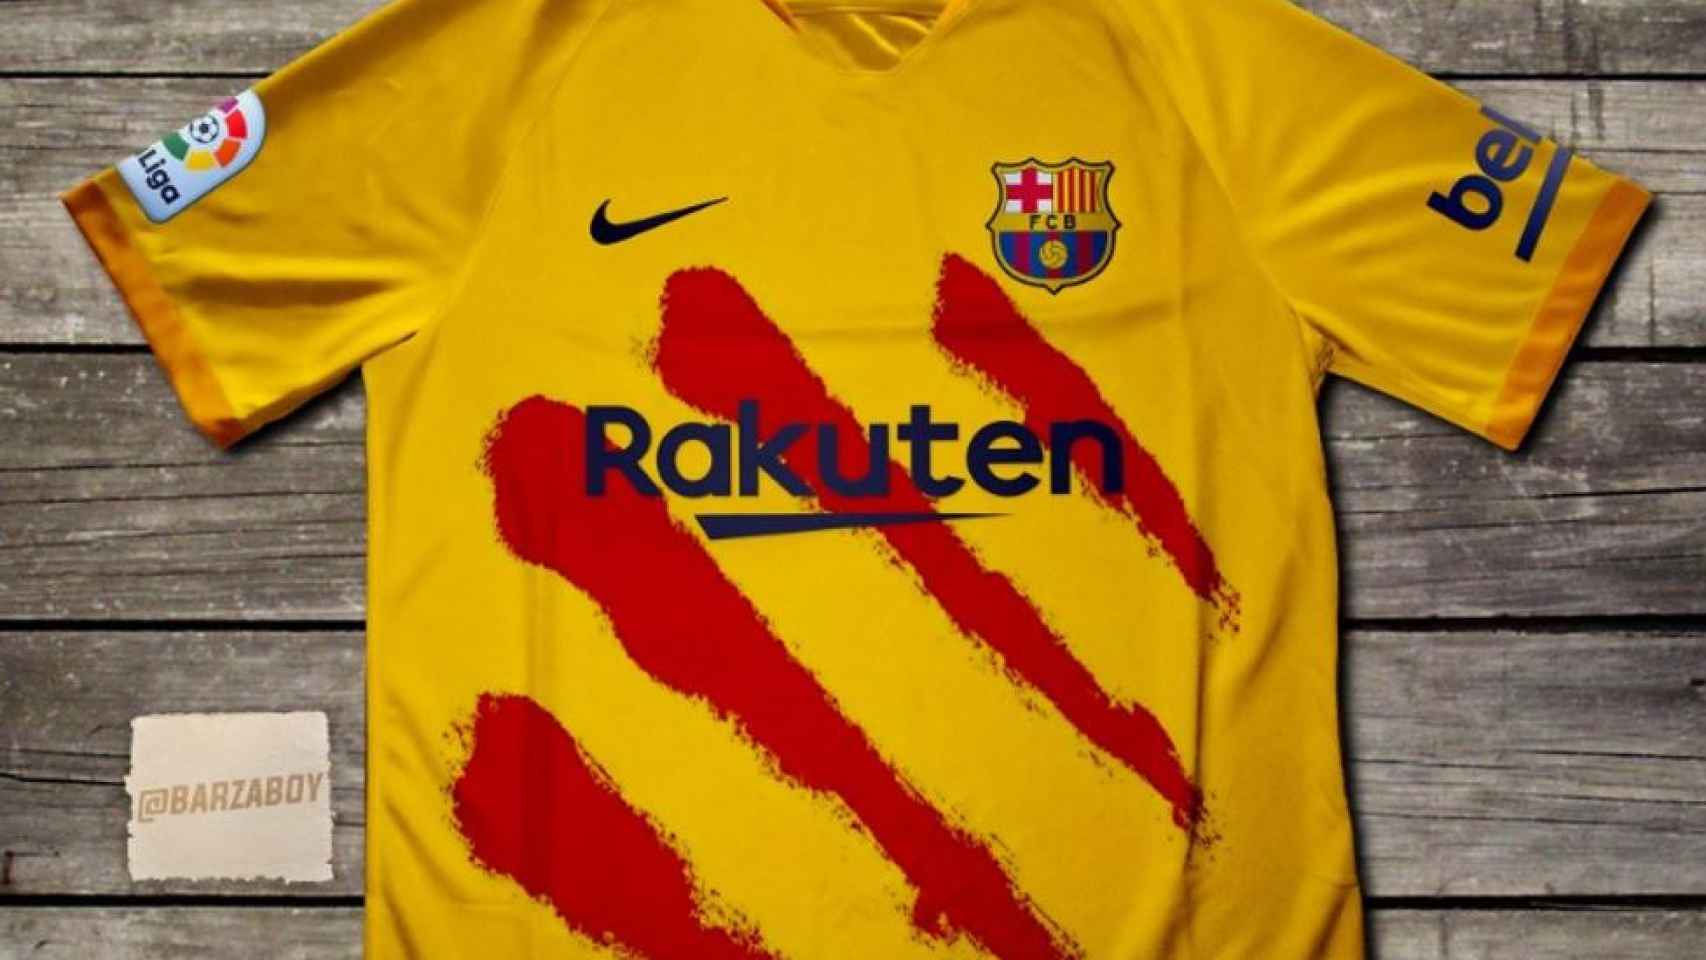 Filtración de la nueva cuarta equipación del Barça | Instagram @Barzaboy